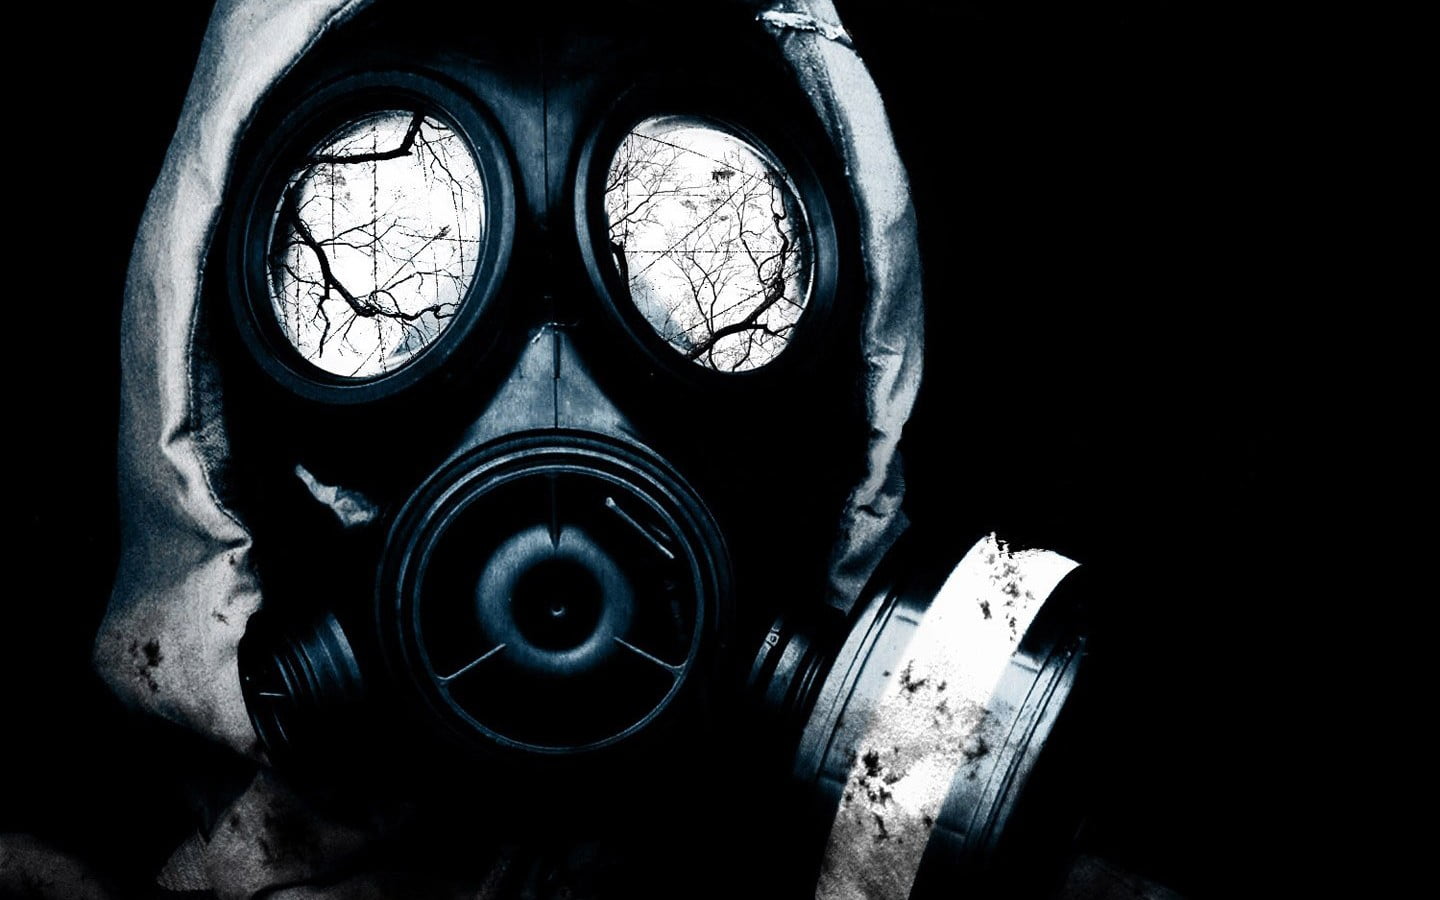 black gas mask, gas masks, abstract, radioactive, indoors, close-up